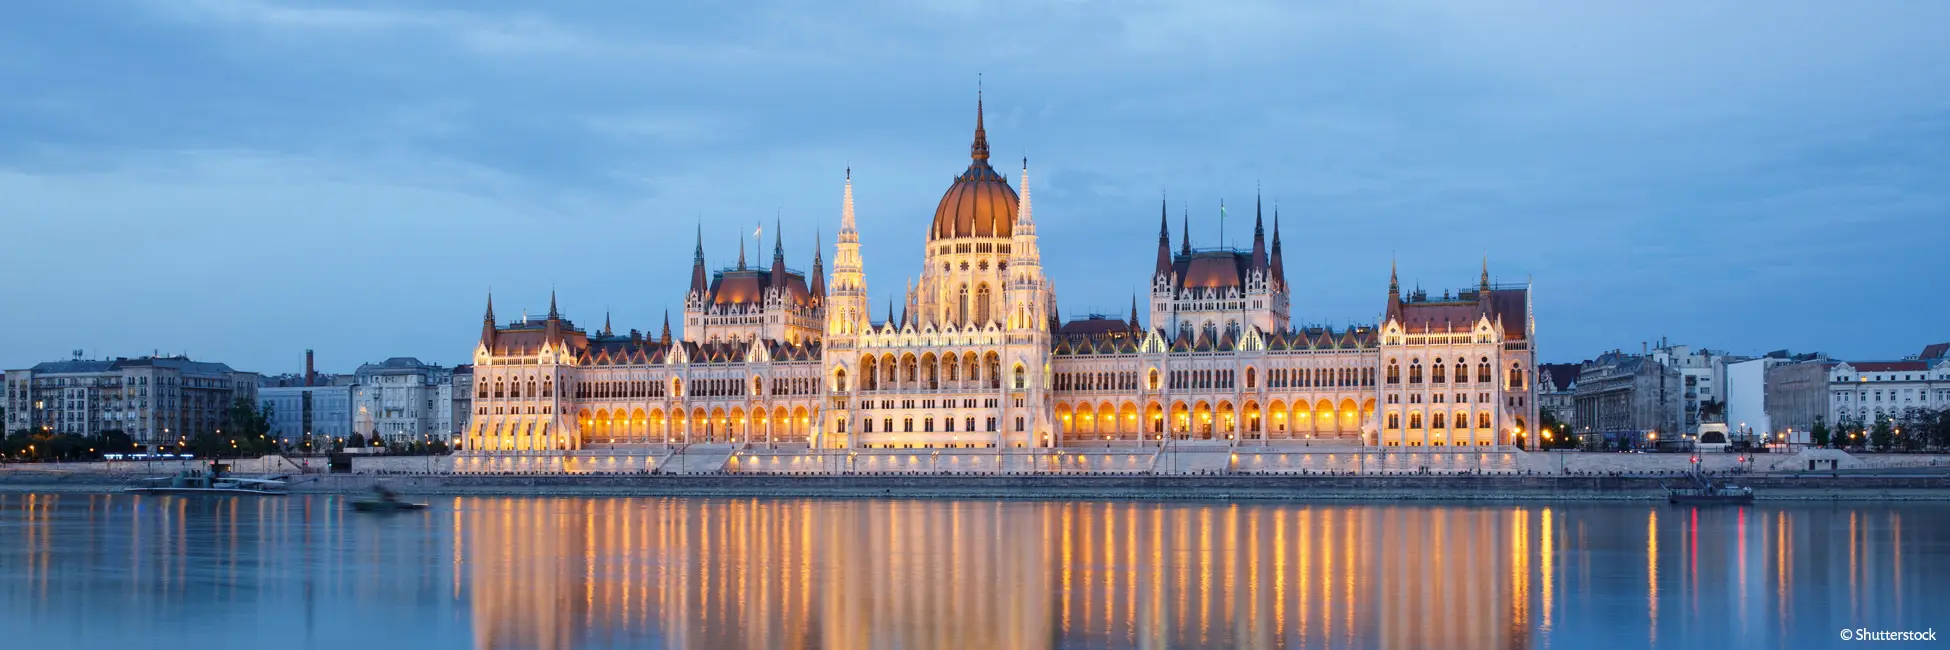 Slider parlement de Budapest de nuit 